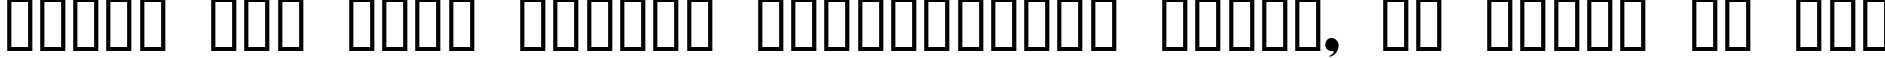 Пример написания шрифтом Domino Regular текста на русском